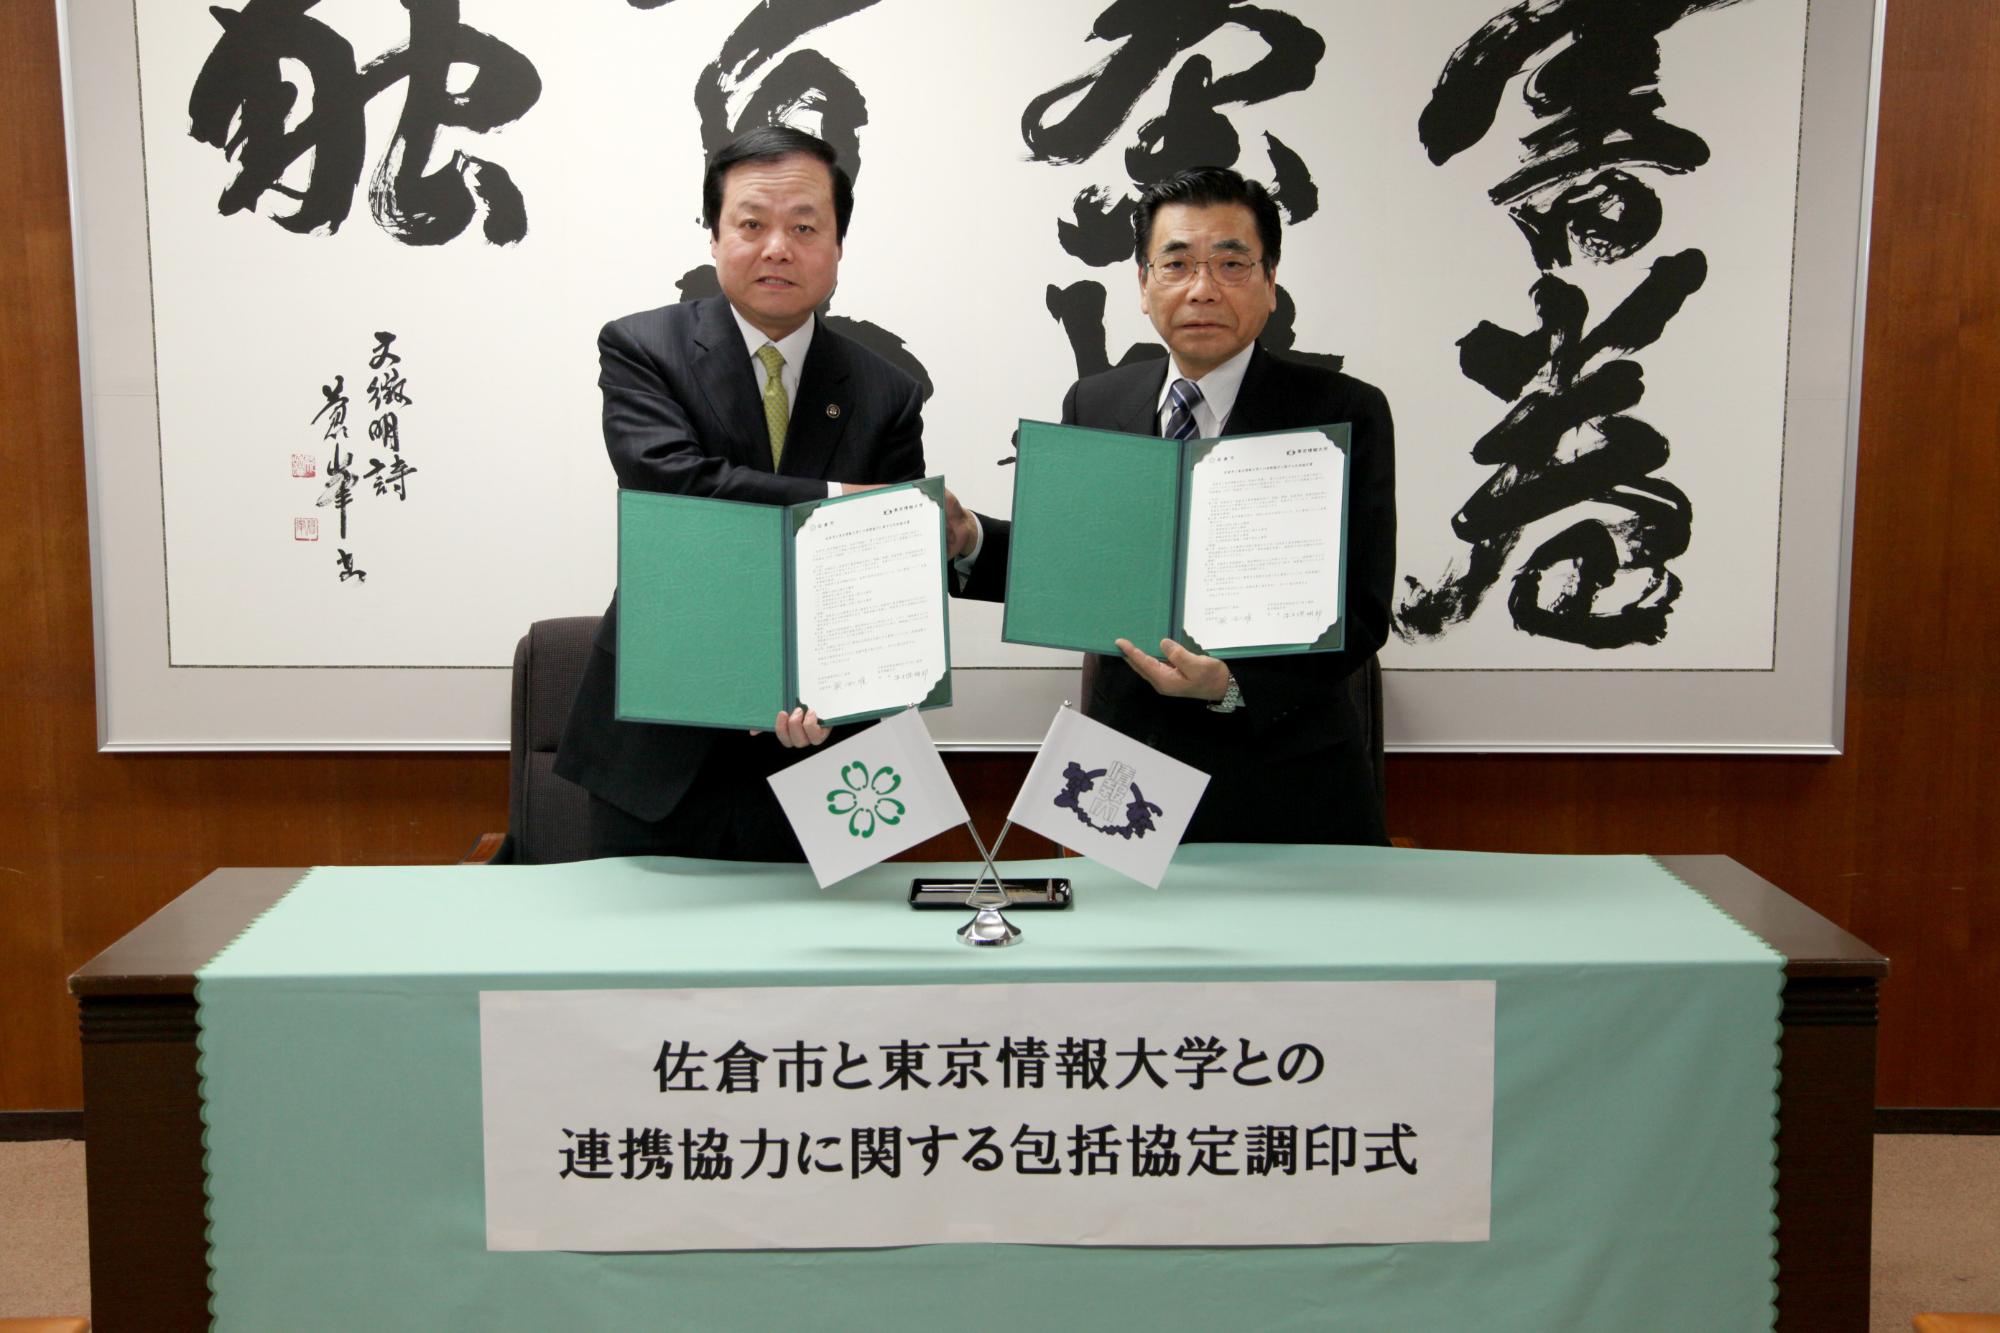 緑色のホルダーに協定書があり、そのホルダーを蕨市長と東京情報大学 牛久保学長がお互いに持ち握手を交わしている写真